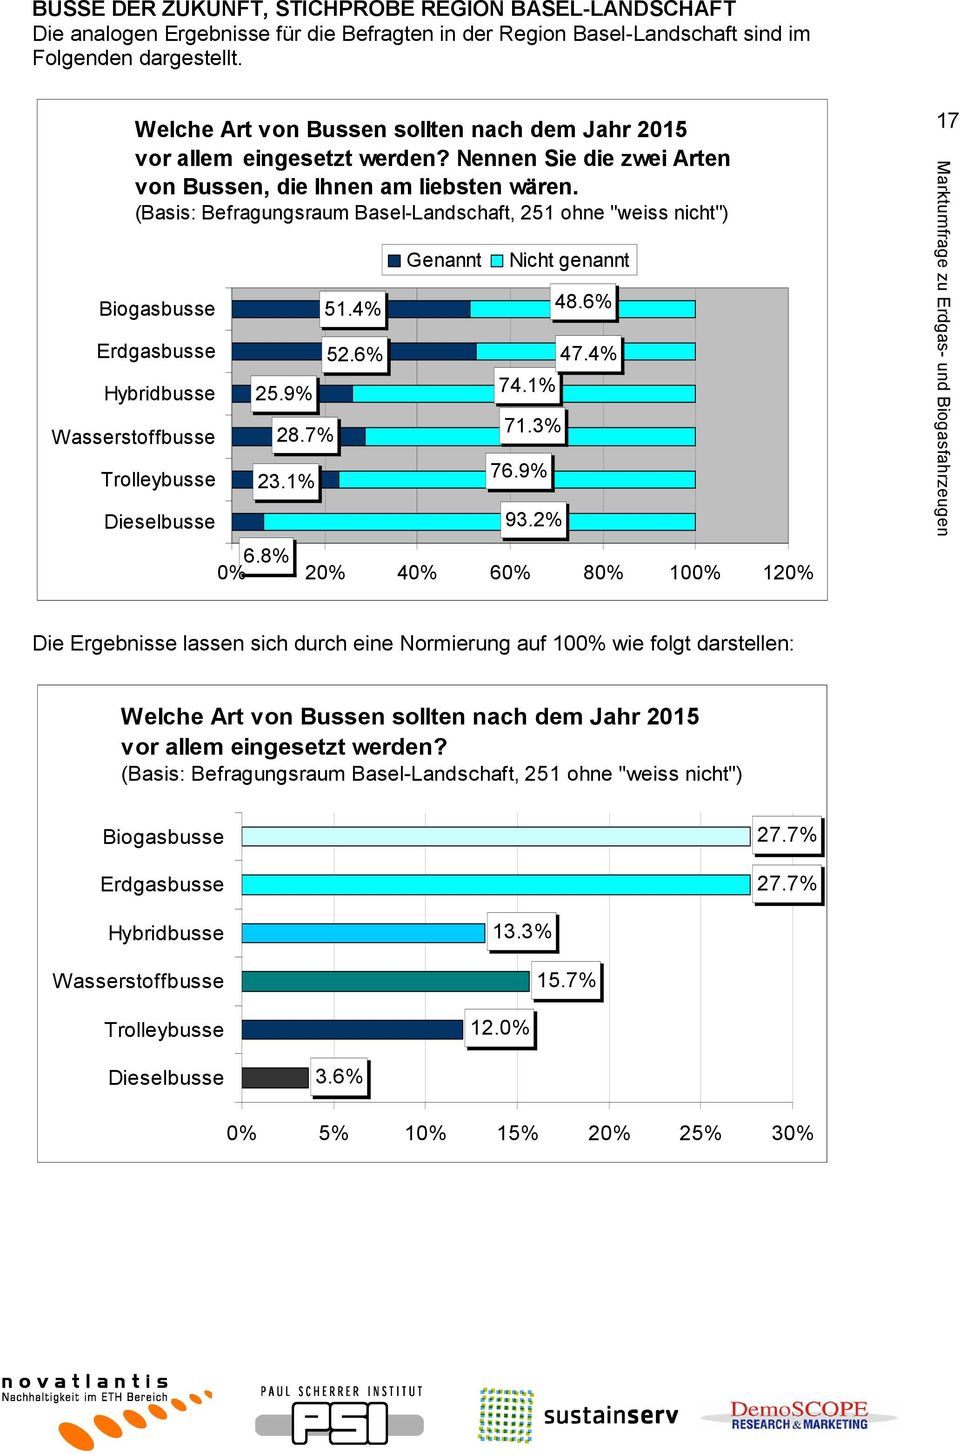 (Basis: Befragungsraum Basel-Landschaft, 251 ohne "weiss nicht") Biogasbusse Erdgasbusse Hybridbusse Wasserstoffbusse Trolleybusse Dieselbusse 25.9% 28.7% 23.1% 51.4% 52.6% Genannt Nicht genannt 74.